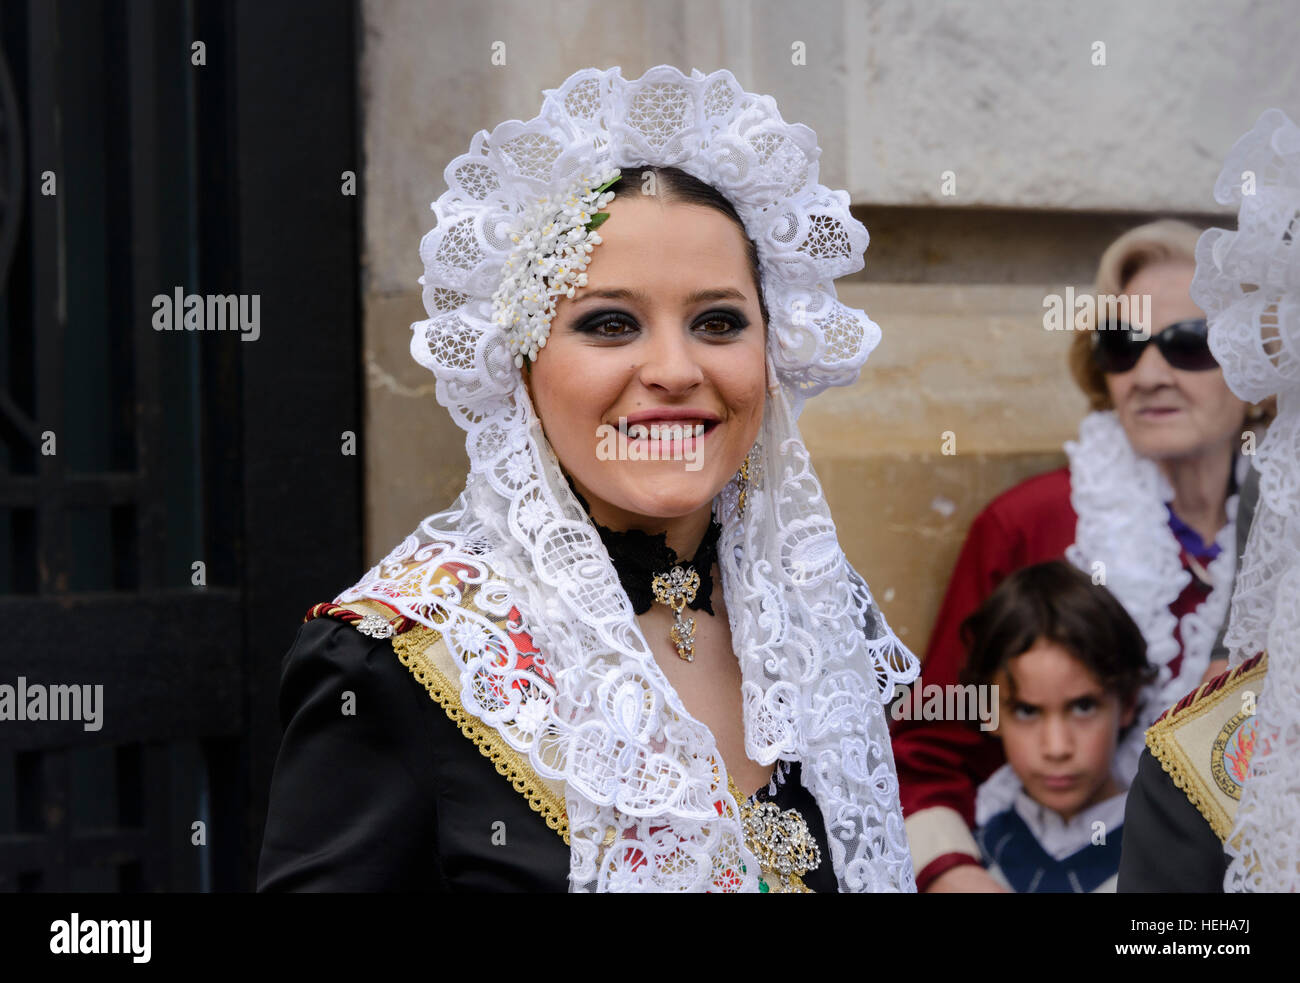 Chica española en traje tradicional incluyendo mantilla de encaje mantón o velo durante las fallas o Falles festival en Valencia España Foto de stock